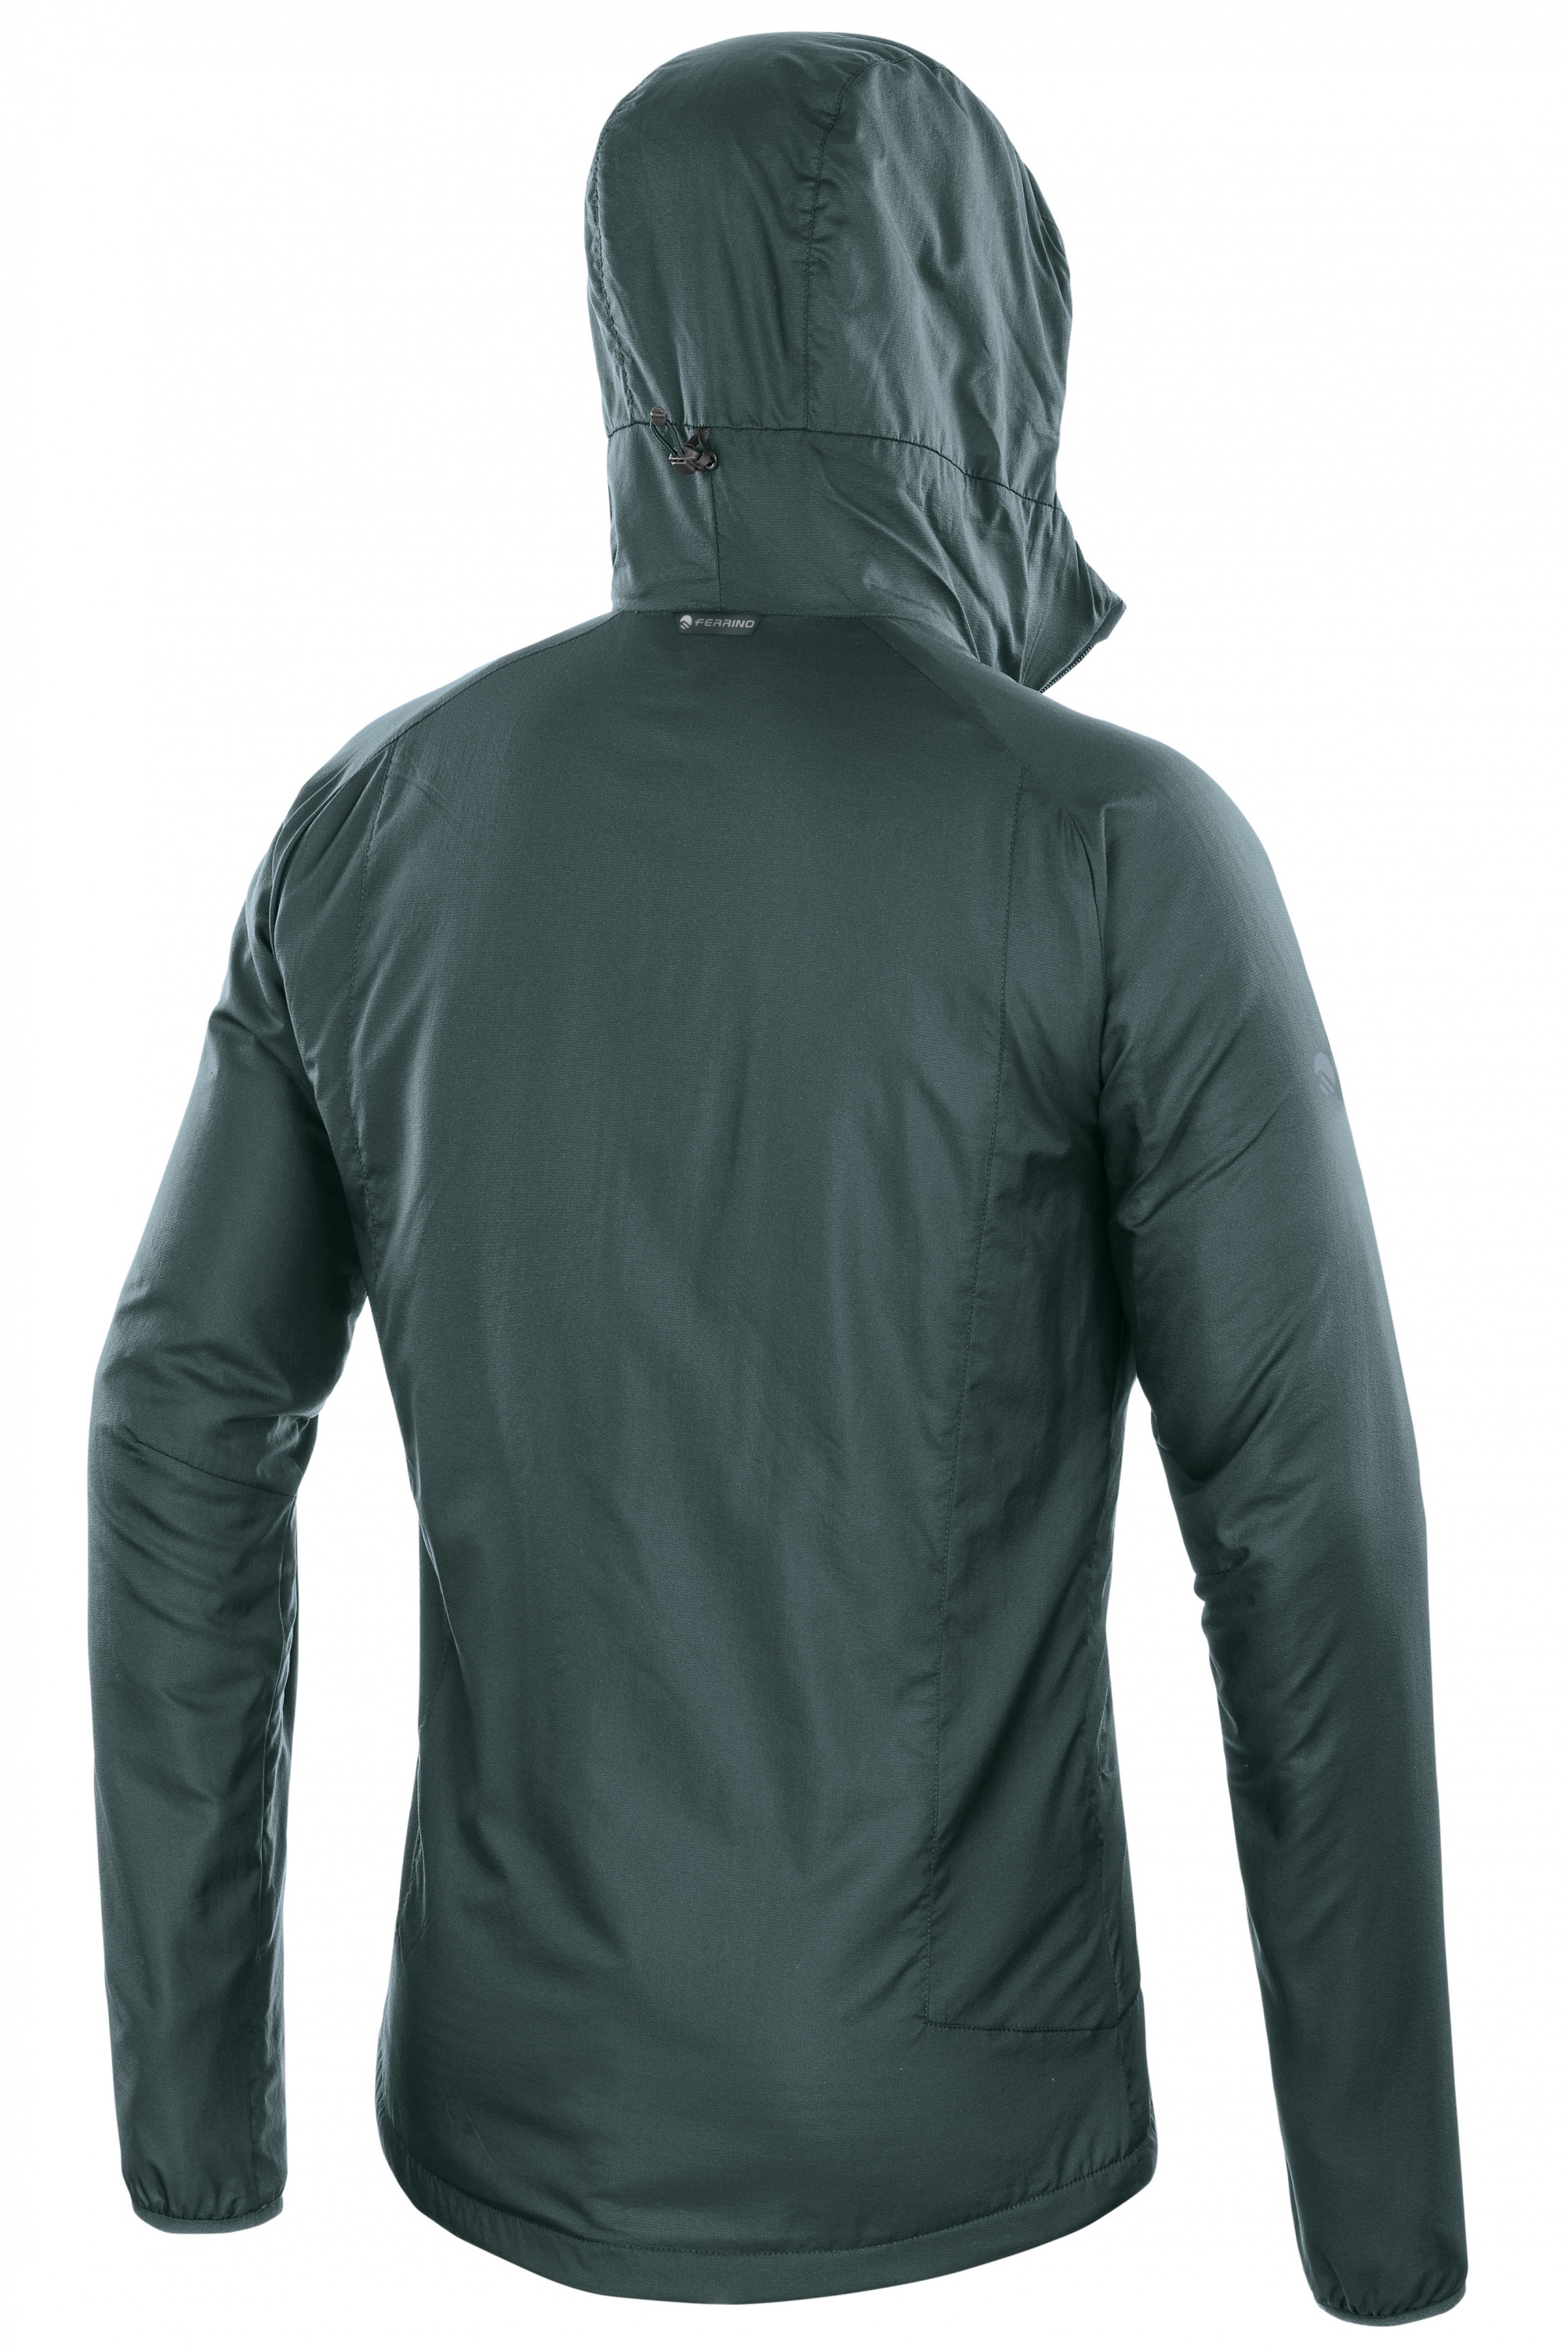 Ferrino Official Shop | Breithorn Jacket for Men | Thermal Jacket - Ferrino